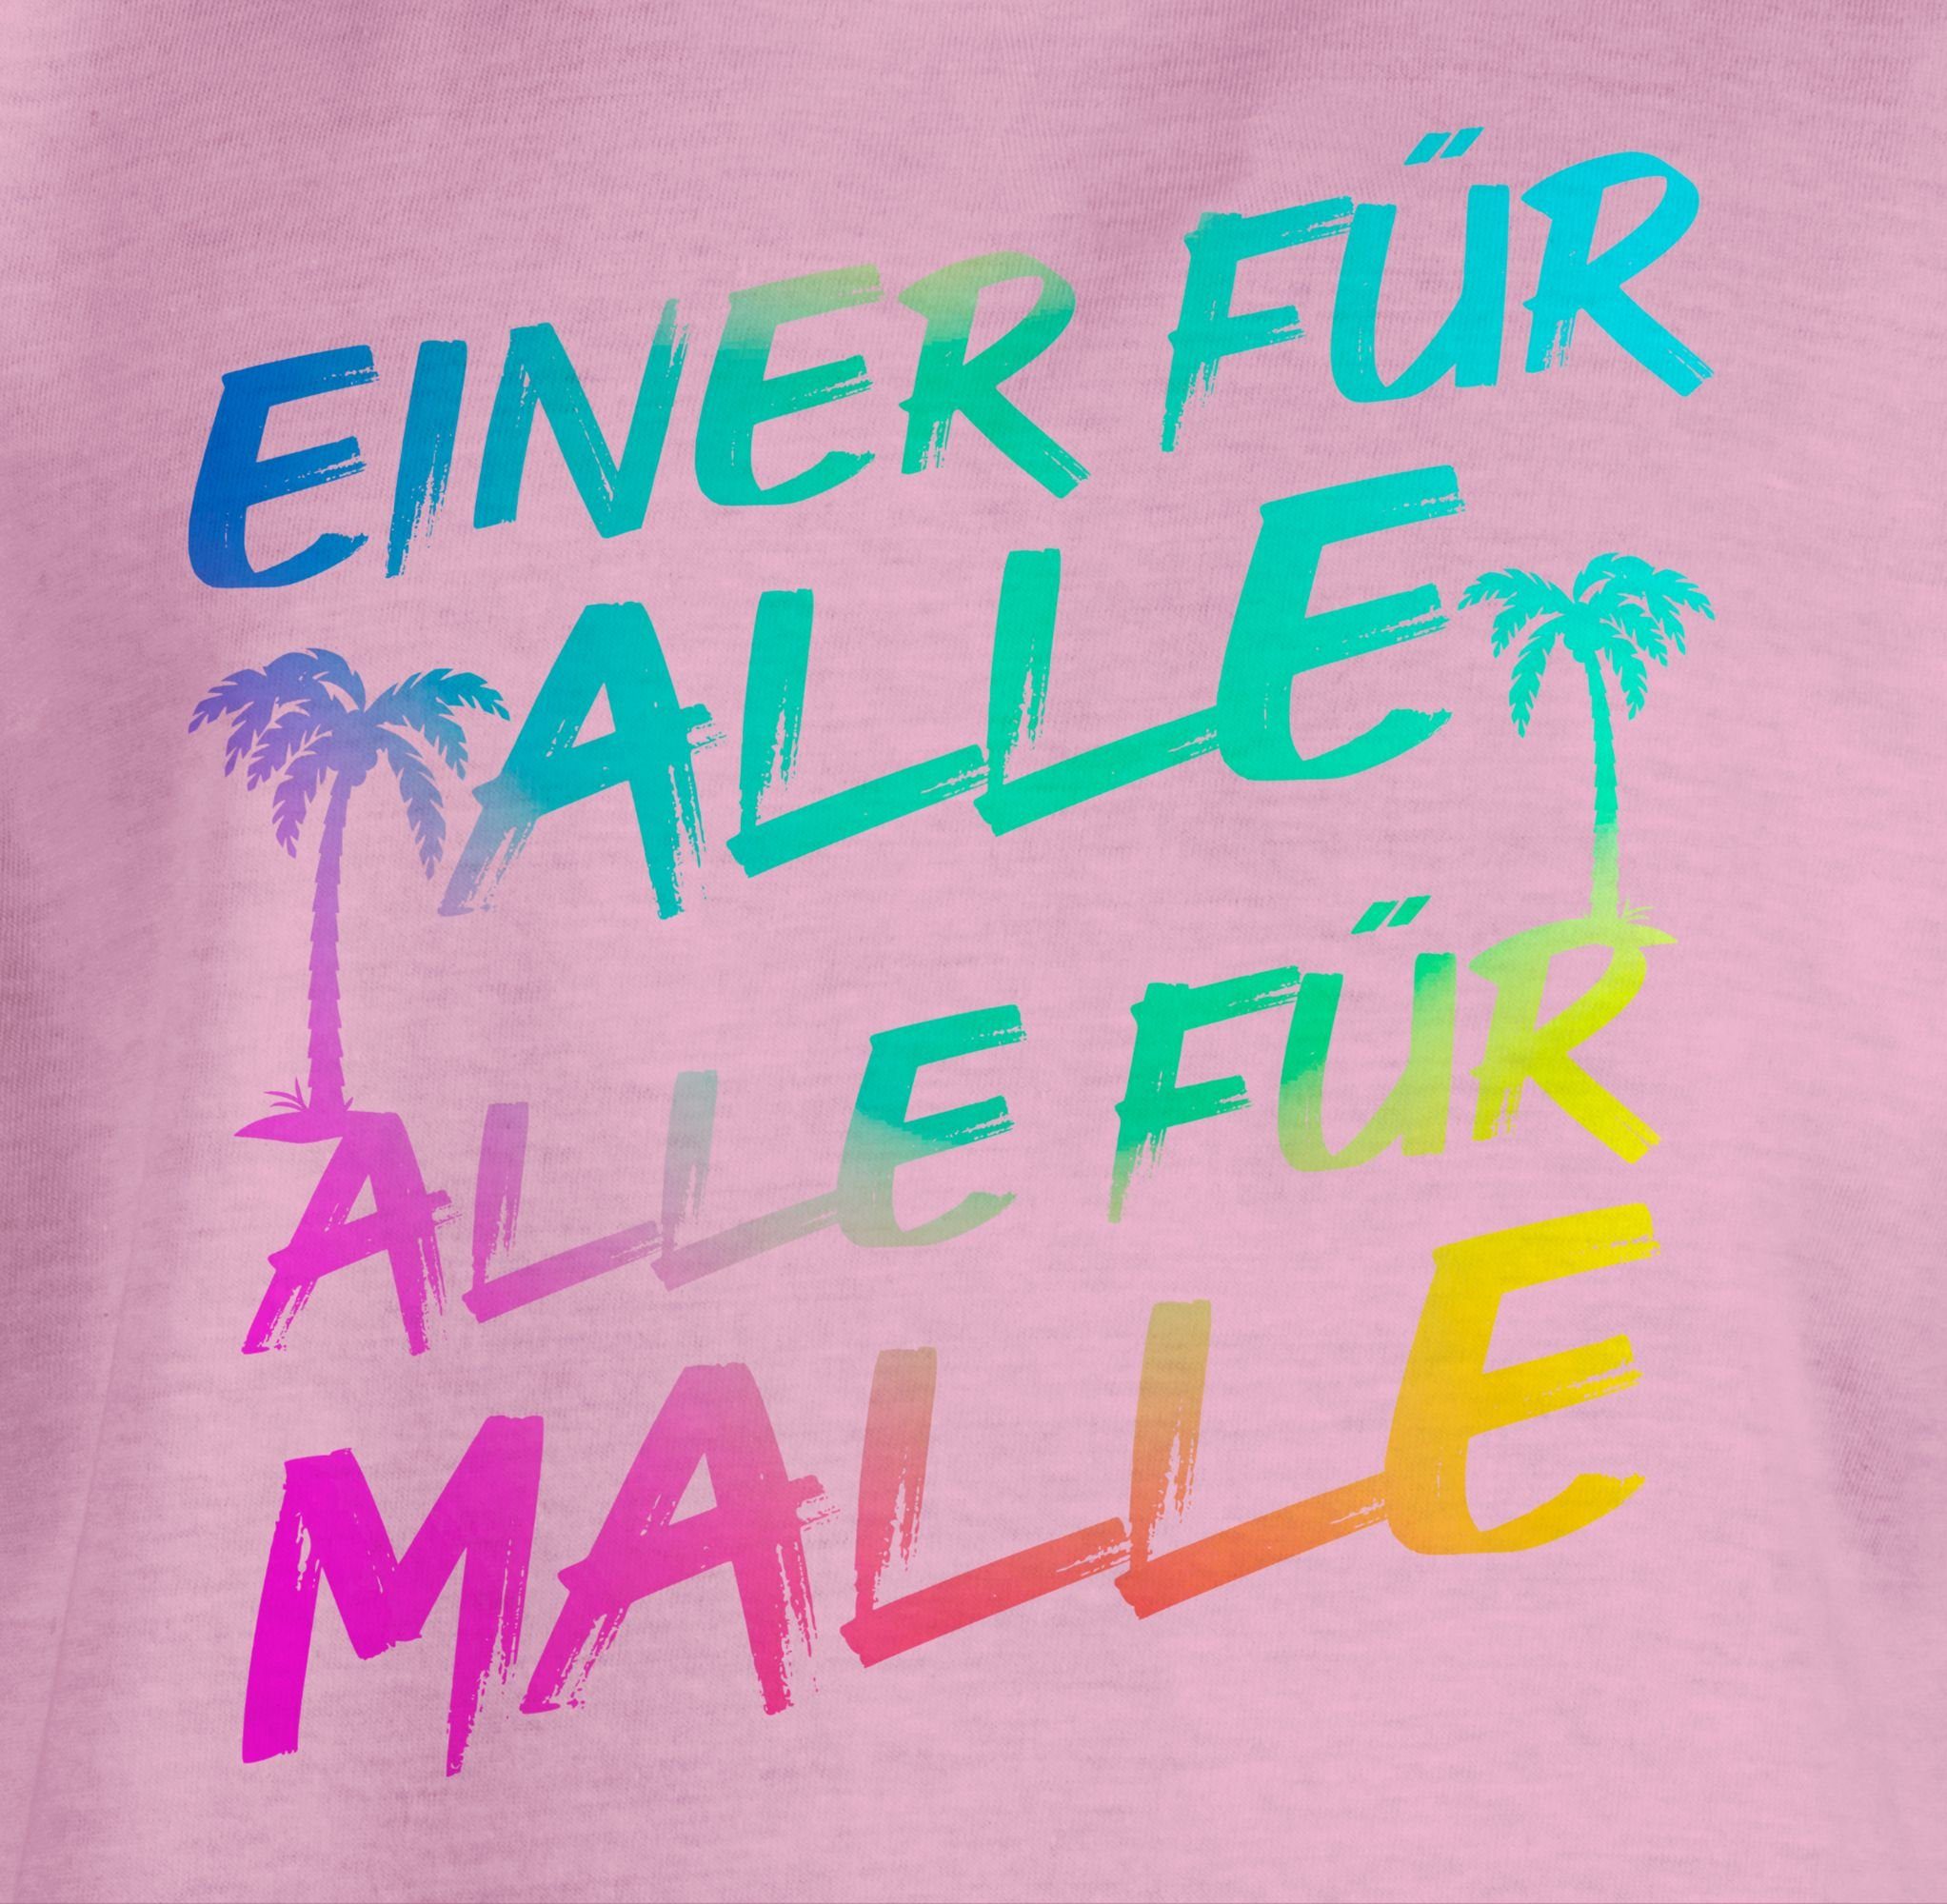 Alle für Einer Sommerurlaub Shirtracer 2 Alle Malle - Rosa für für Mädchen alle Malle T-Shirt